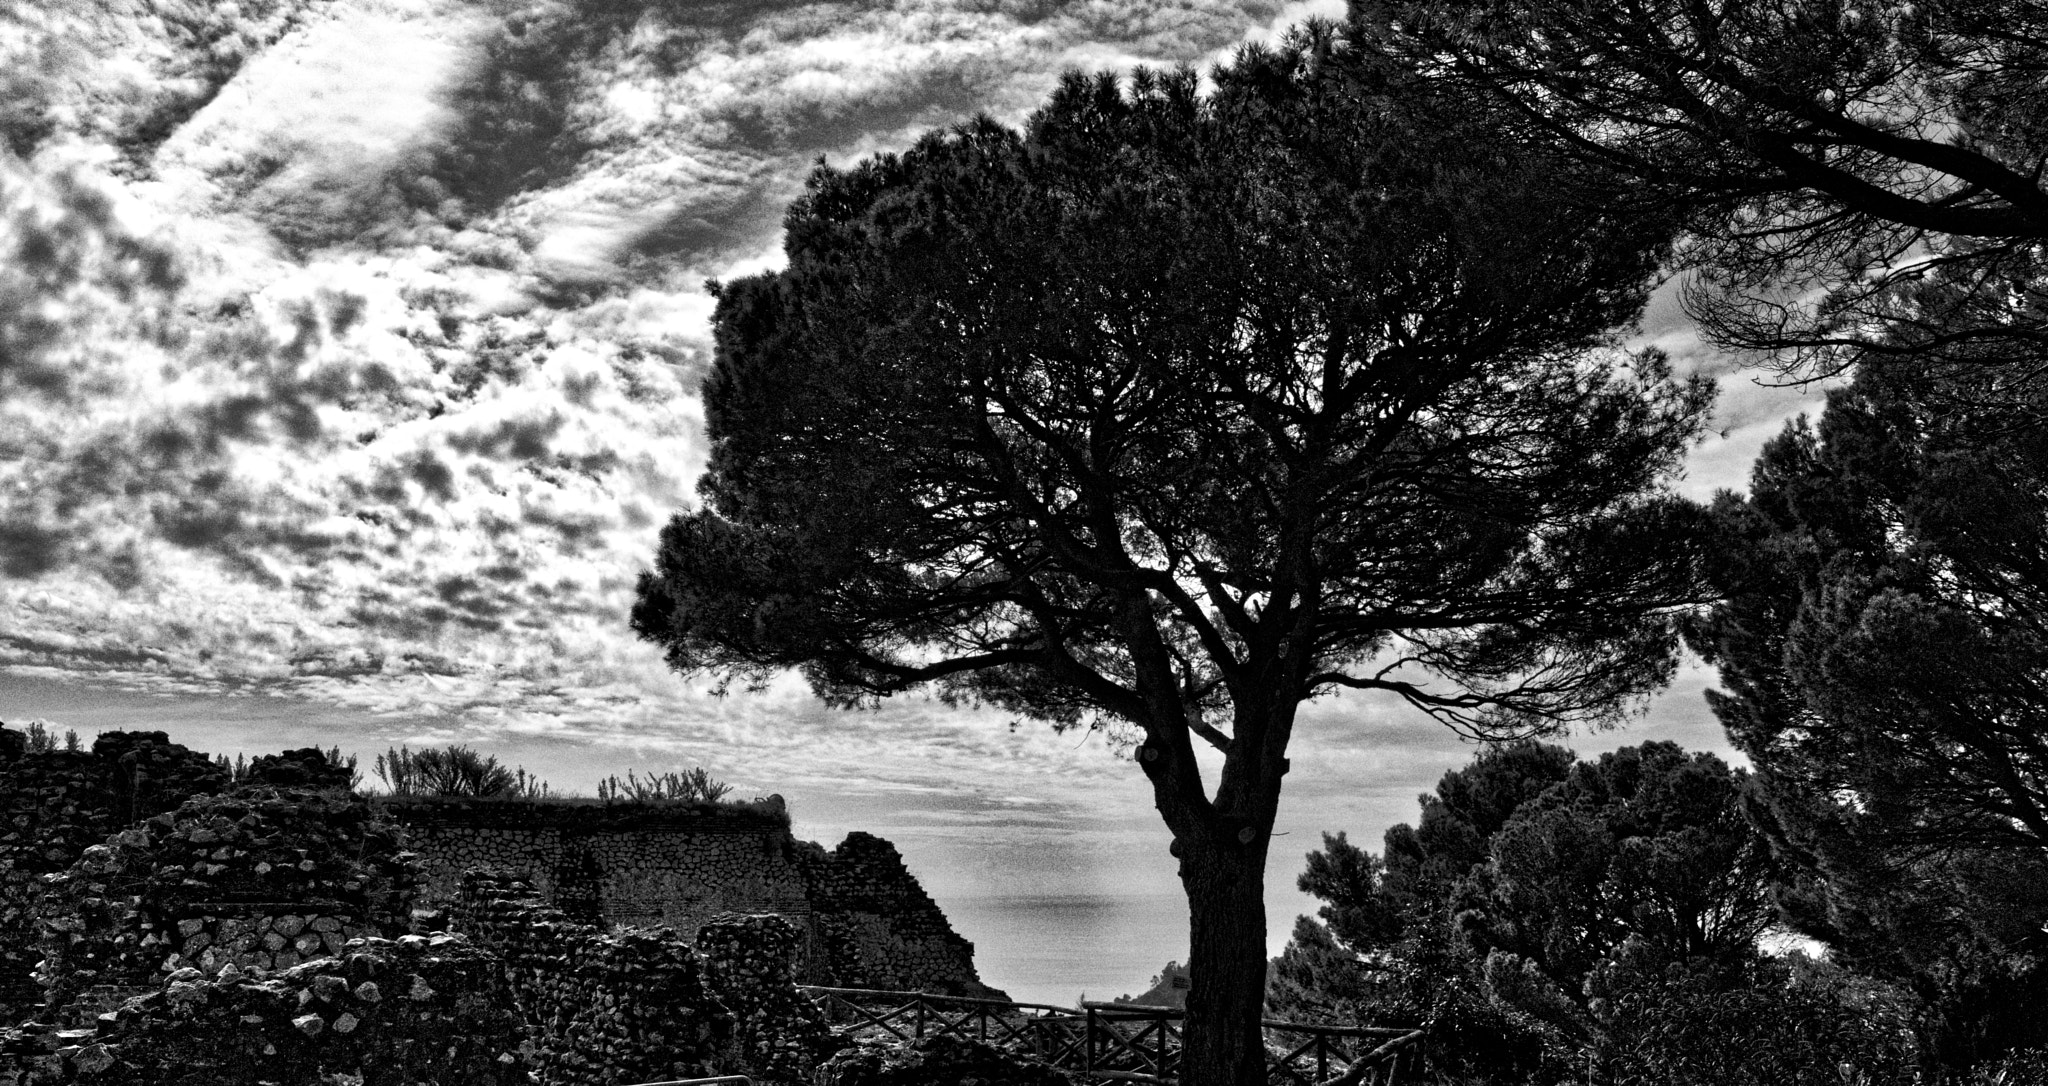 Sony a7 + Sony Distagon T* FE 35mm F1.4 ZA sample photo. Capri (villa of tiberius) photography